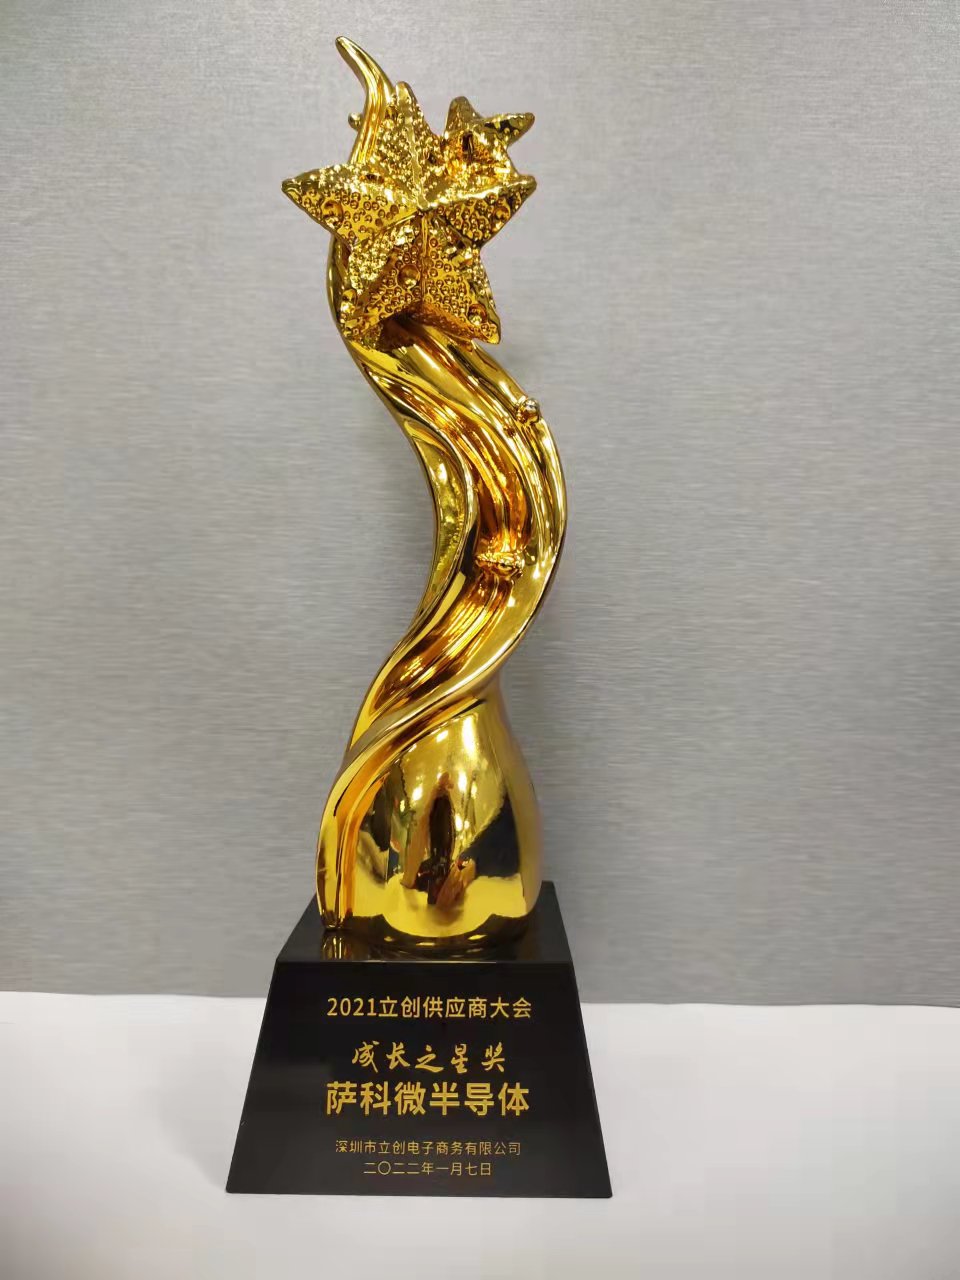 El "Premio Estrella Creciente" de la Conferencia de Proveedores de Lichuang 2021